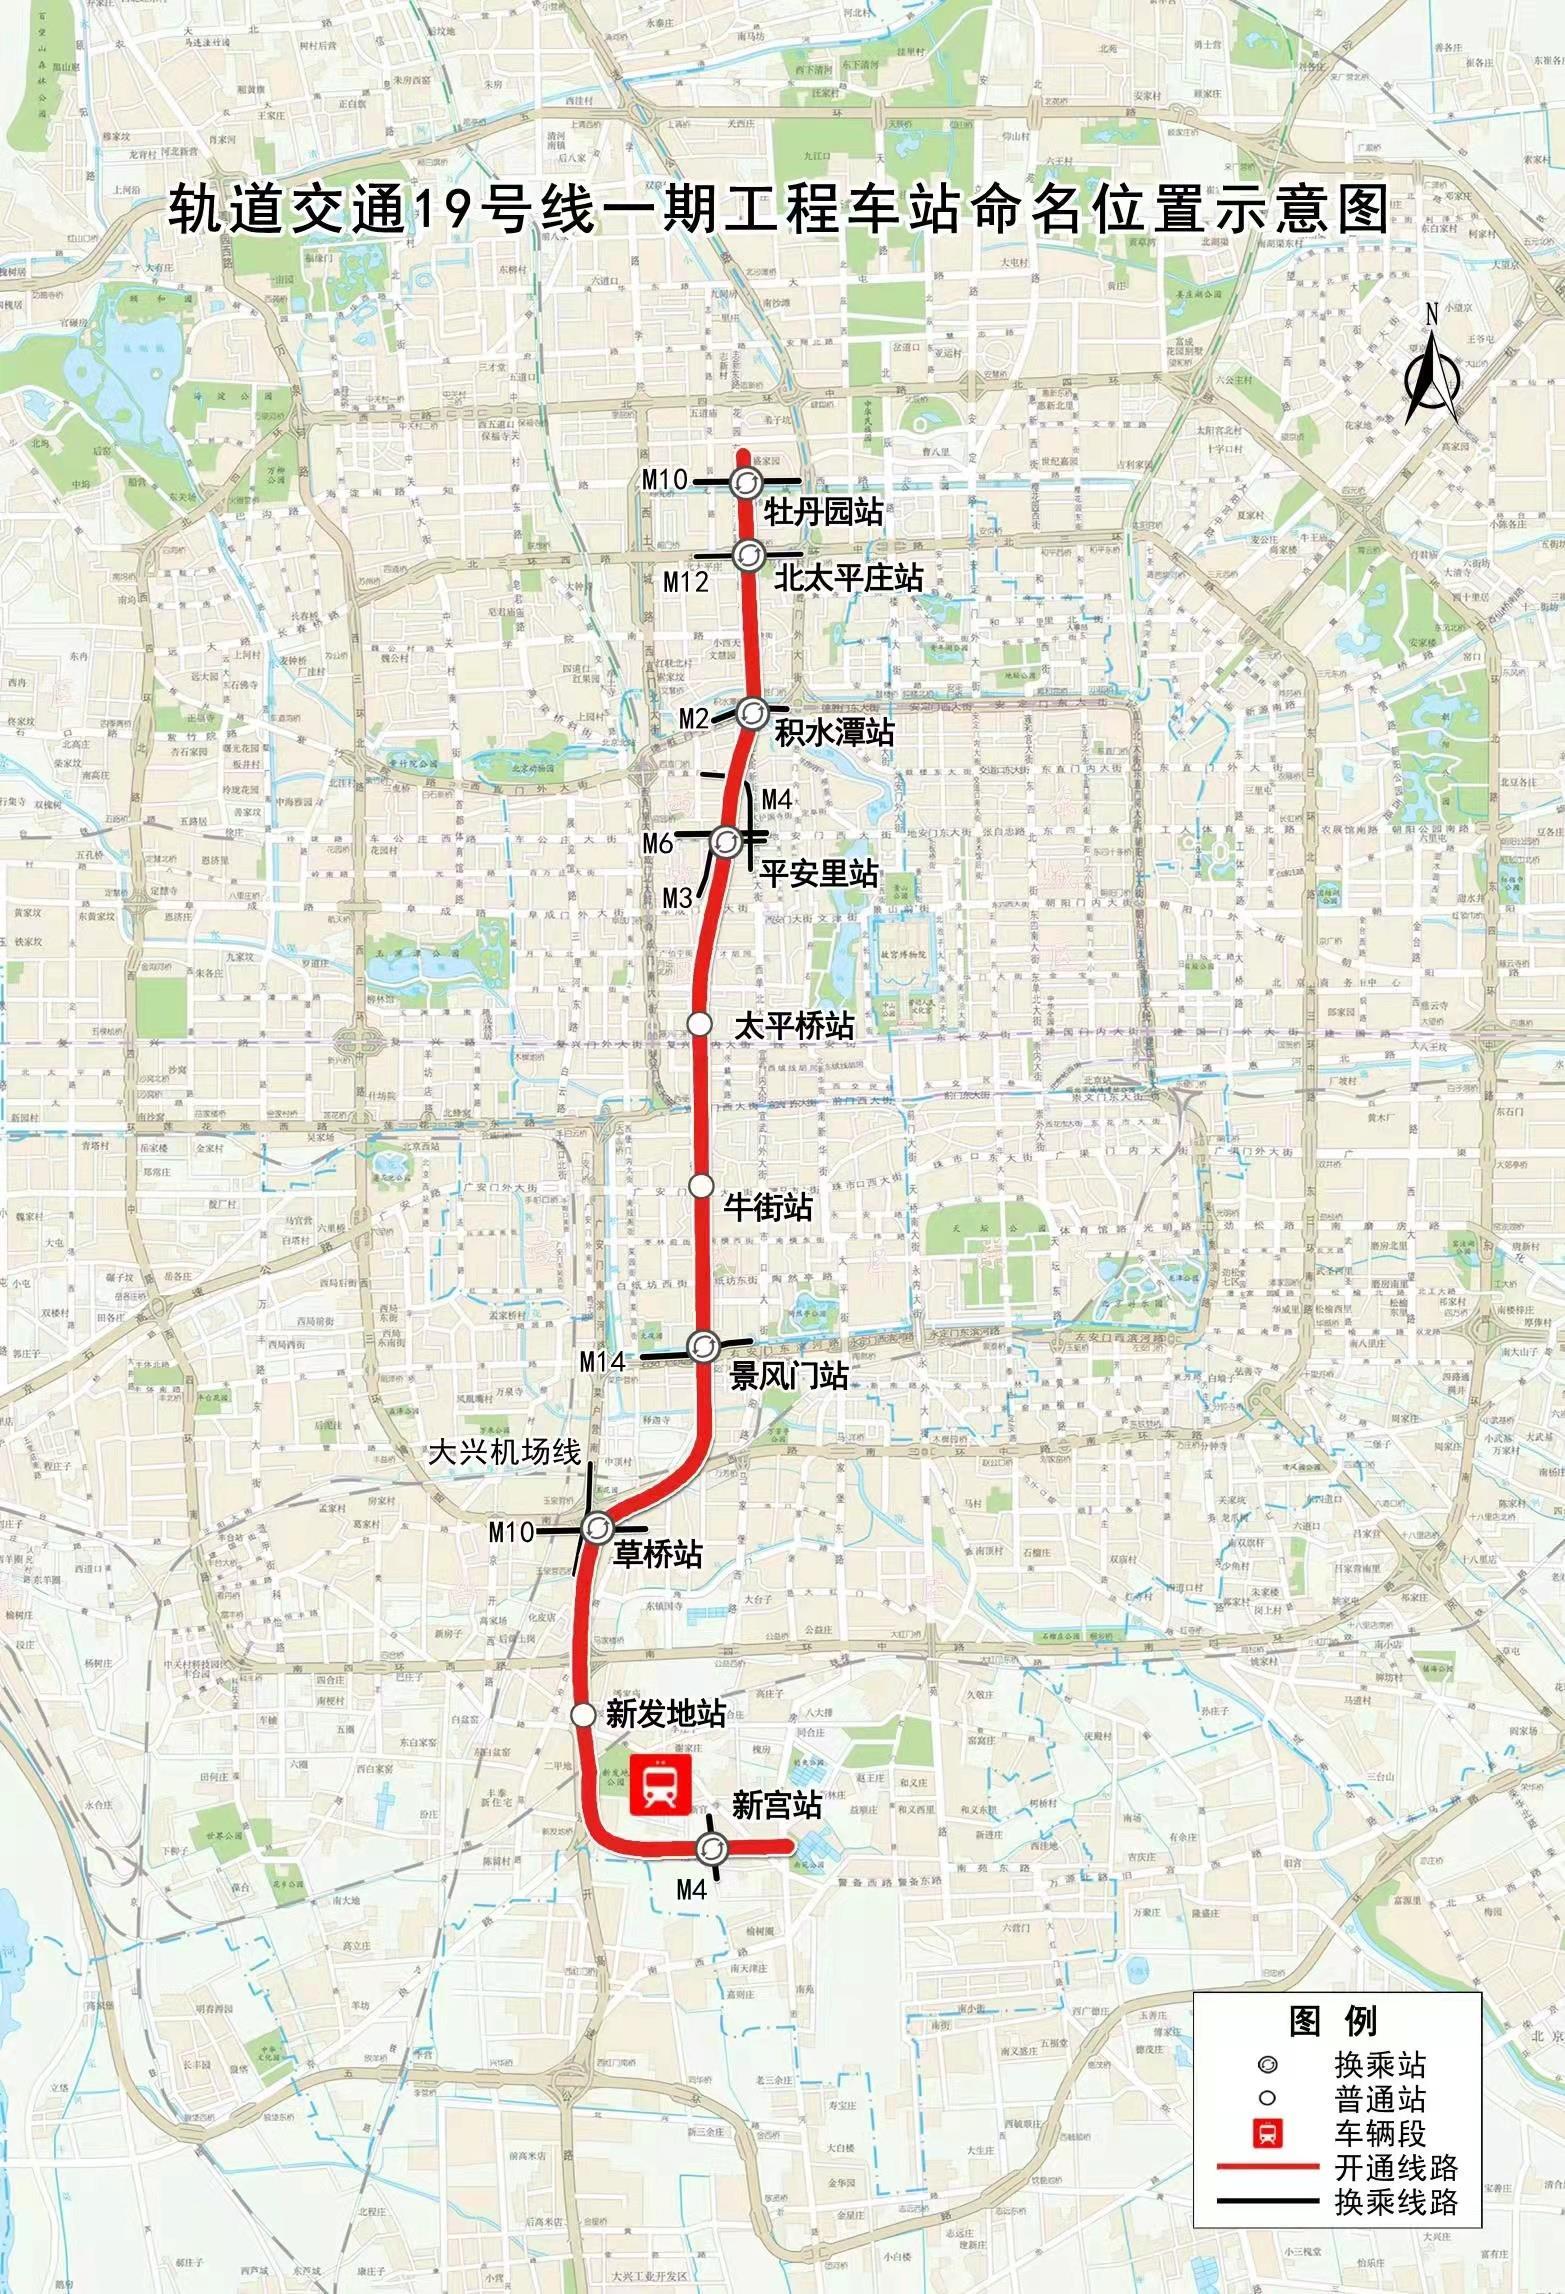 今年北京开通地铁线路数量创历史之最 9条线段具备年底开通条件